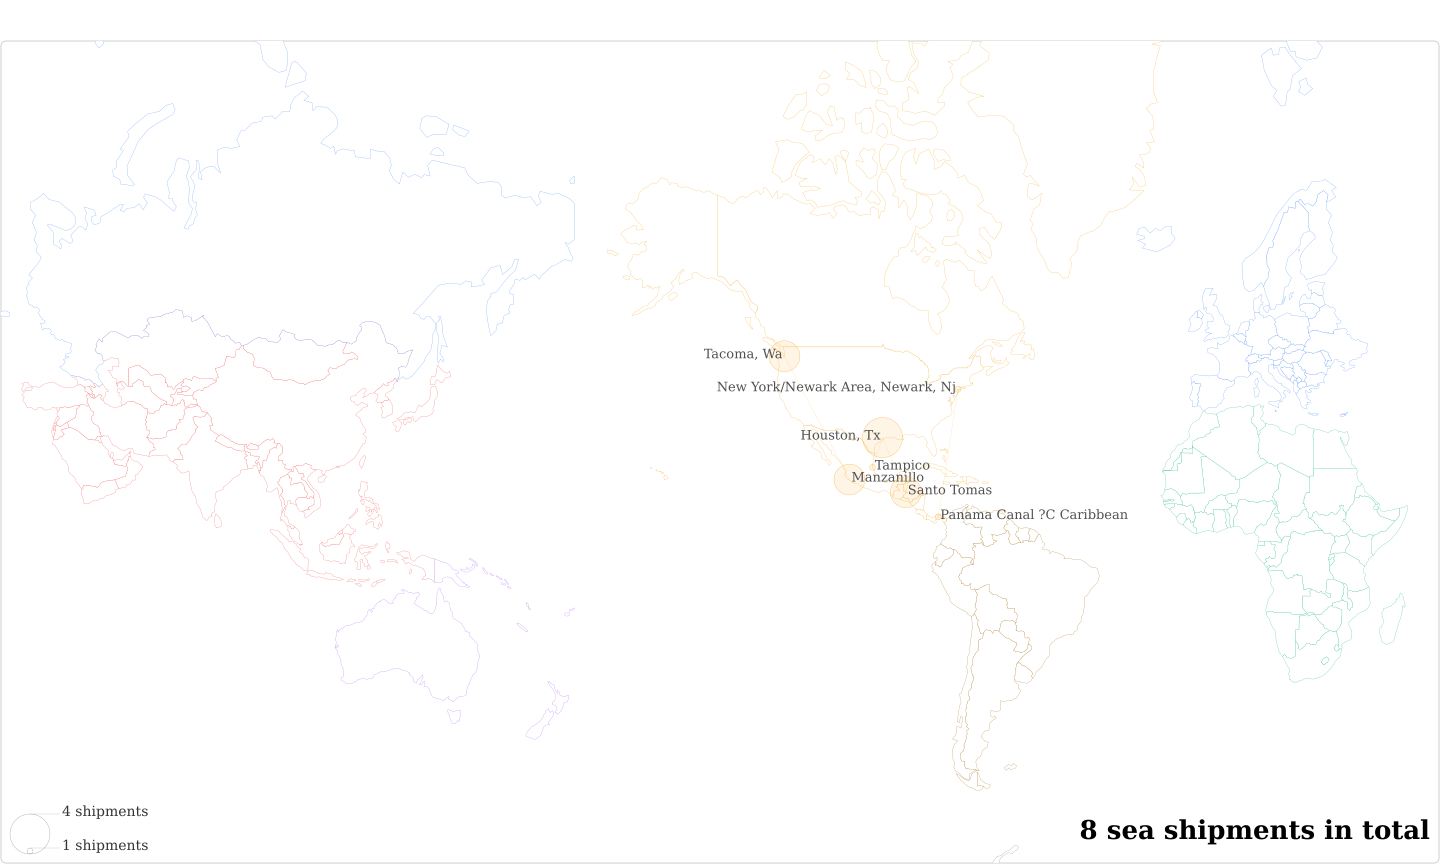 Compradores Y Exportadores De Cafe S A's Imports Per Country Map